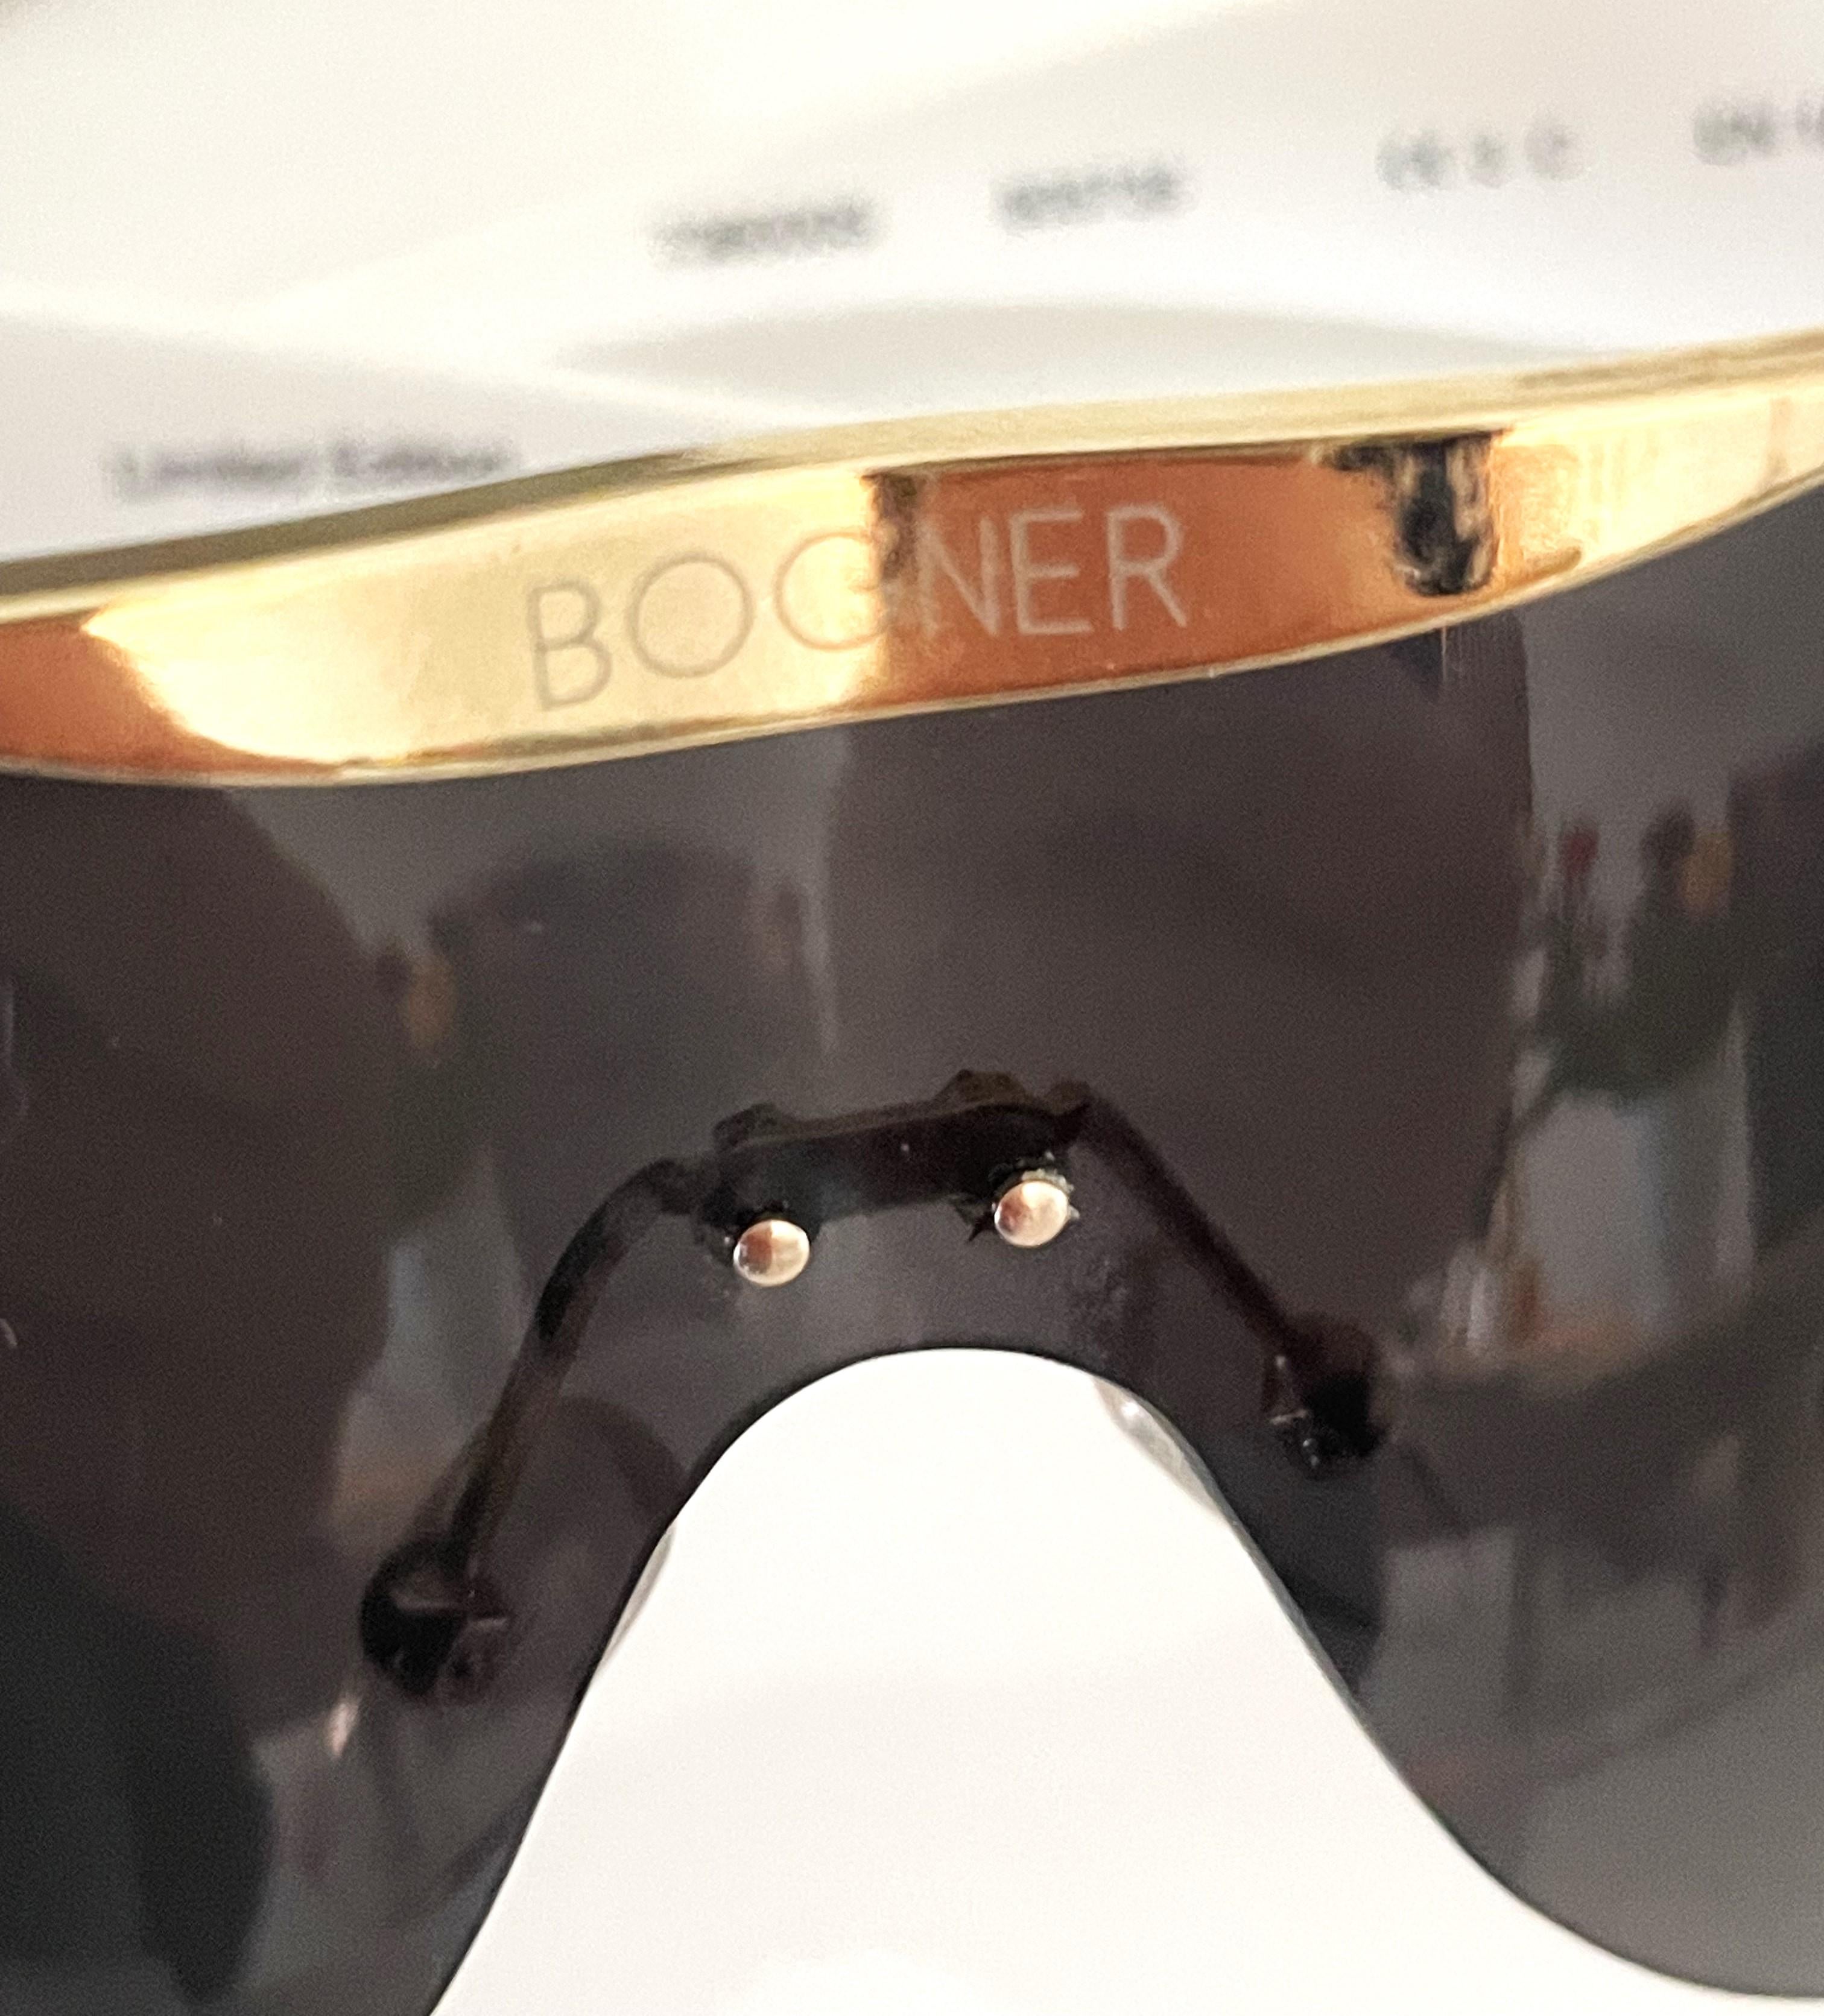 Bogner Lunettes de soleil Skiglasses Limited Edition White 90s 8